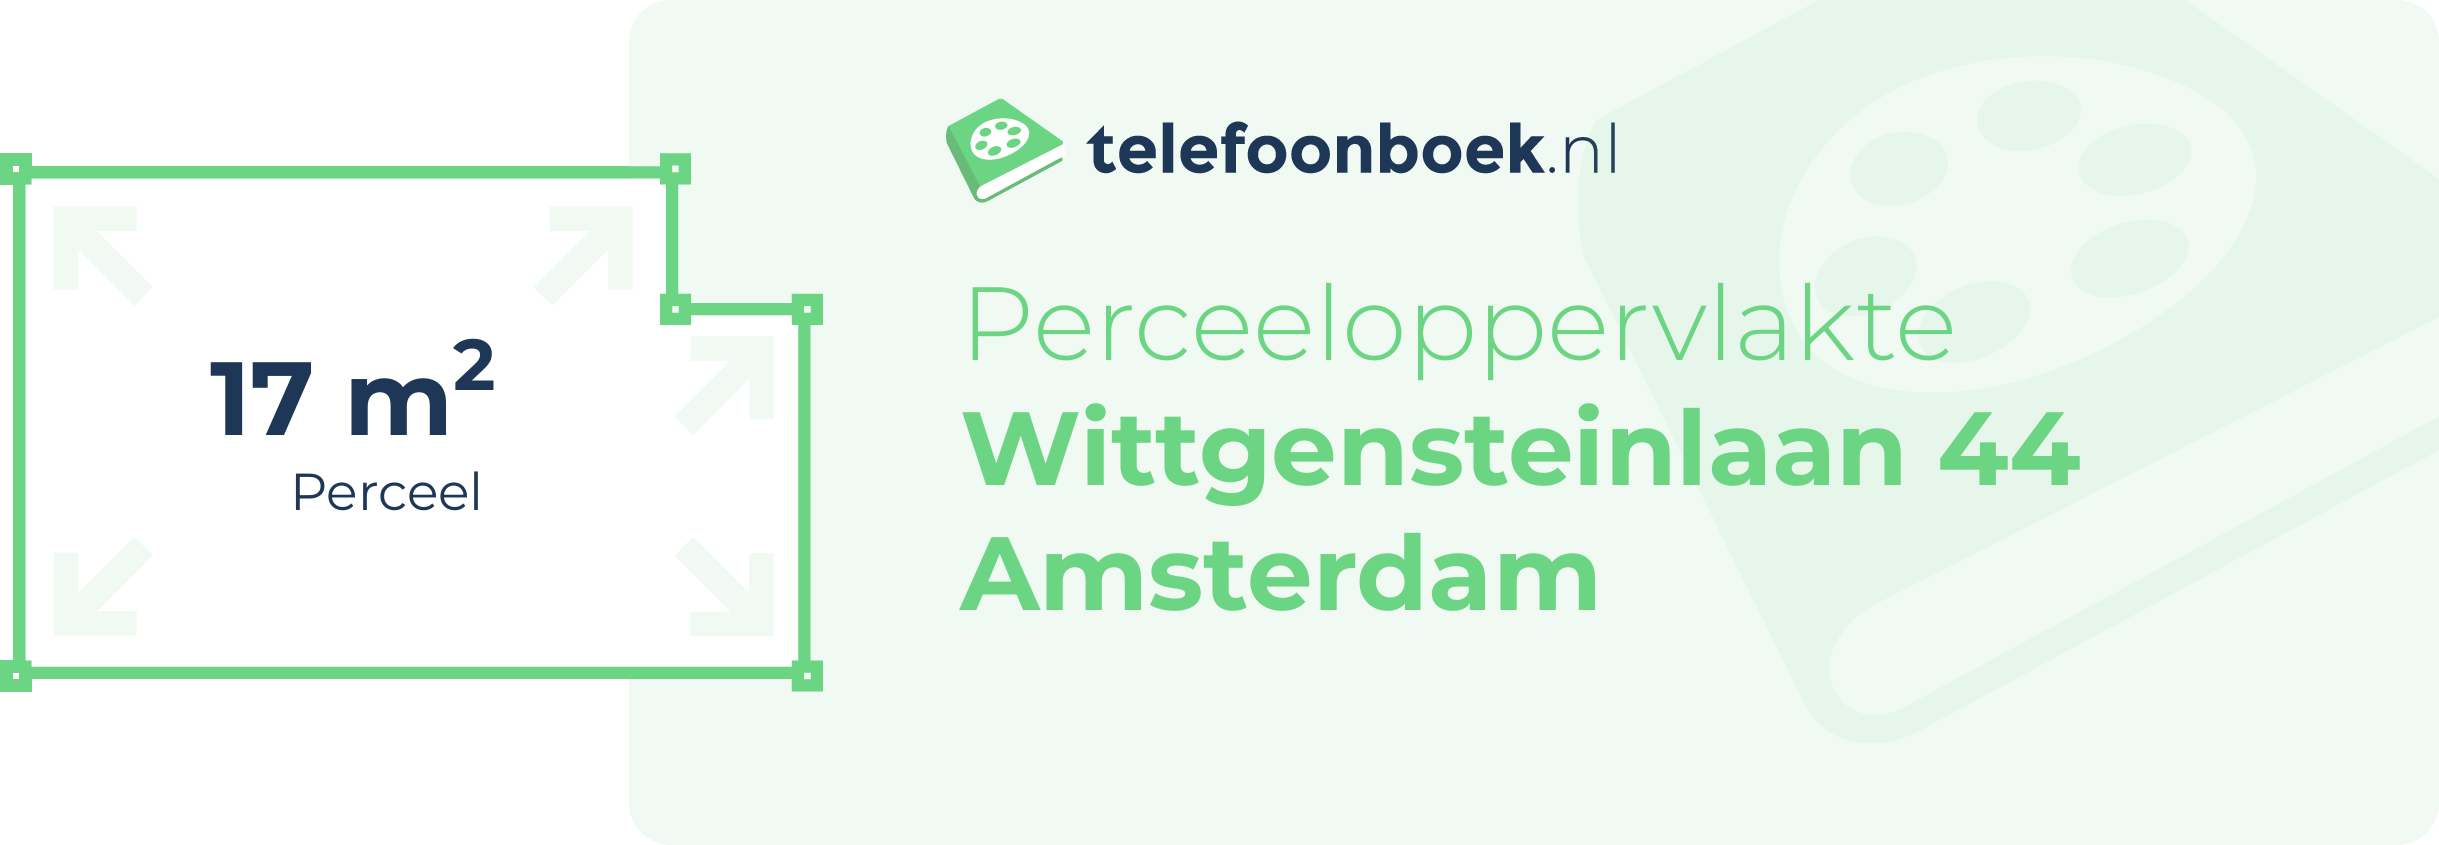 Perceeloppervlakte Wittgensteinlaan 44 Amsterdam